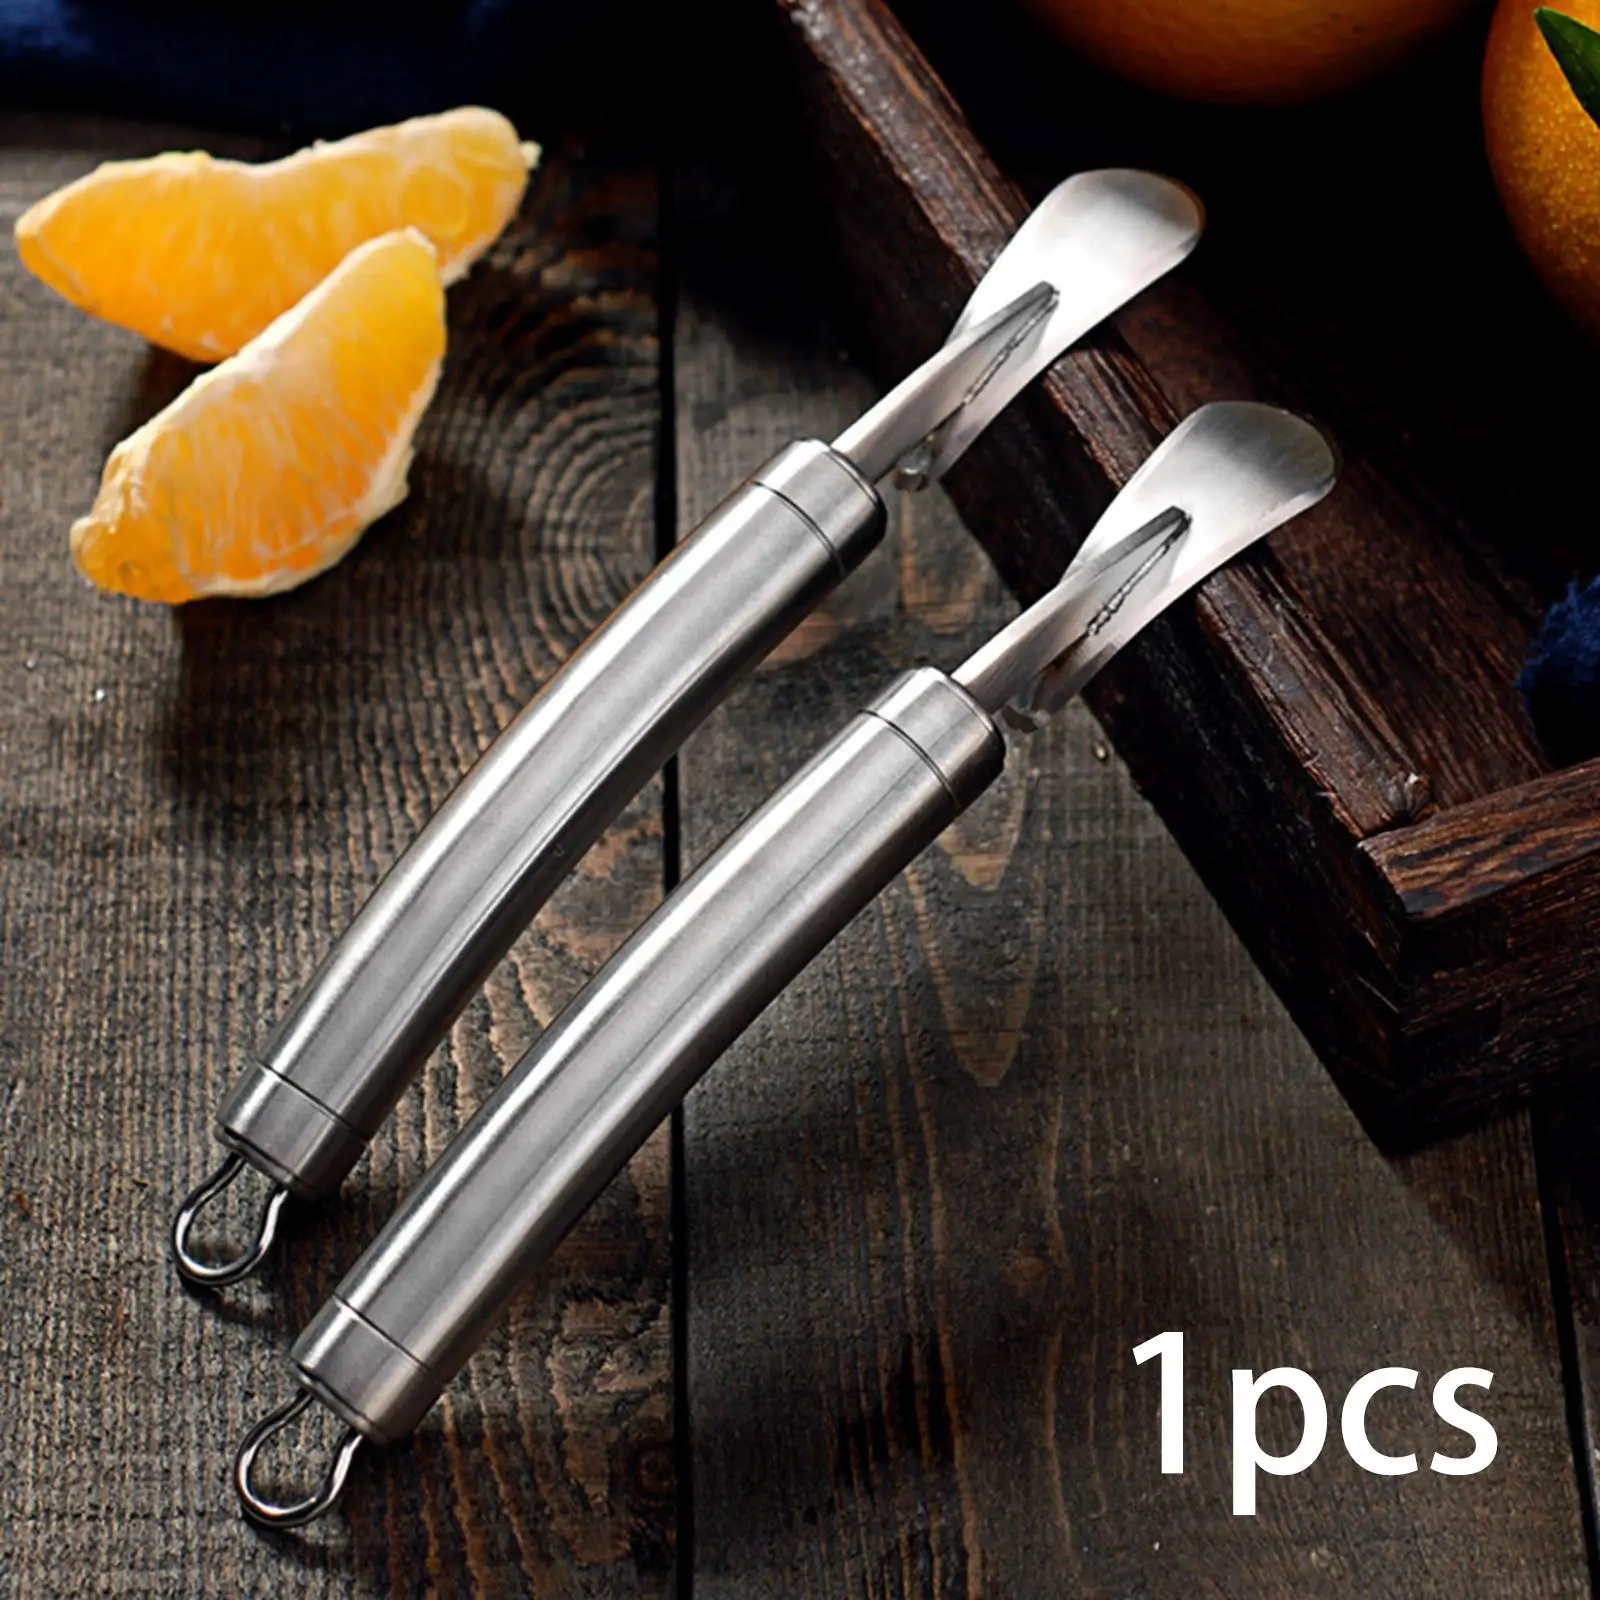 Stainless Steel Orange Peel Removal Grapefruit Opener Practical Fruit Opener Lemon Peel Cutter Slicer for Kitchen Home